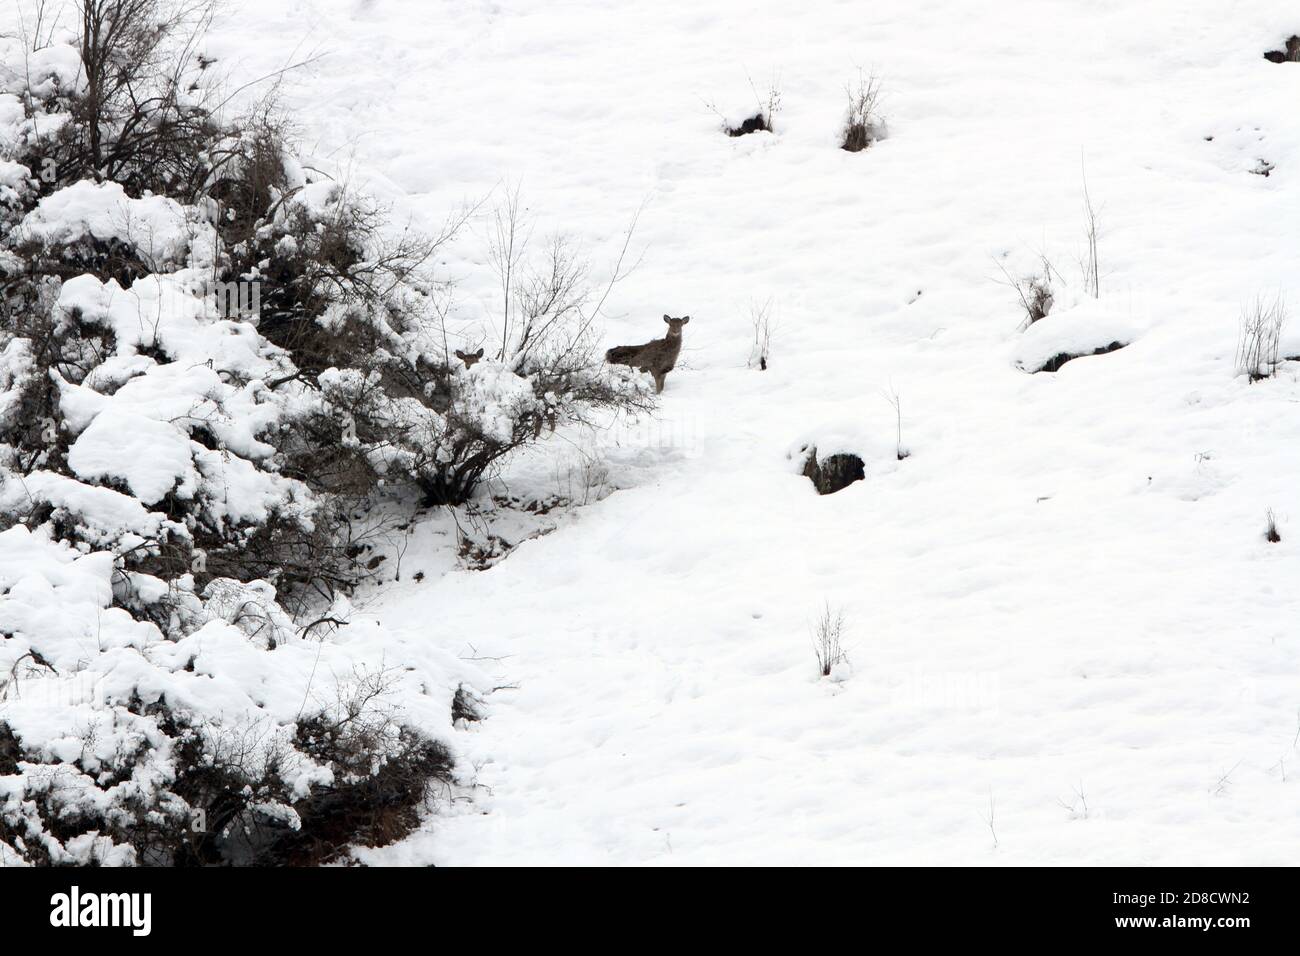 Cerf de Kashmir, cerf de Hangul (Cervus canadensis hanglu, Cervus hanglu), dans la neige, Inde, Cachemire, Dachigam Banque D'Images